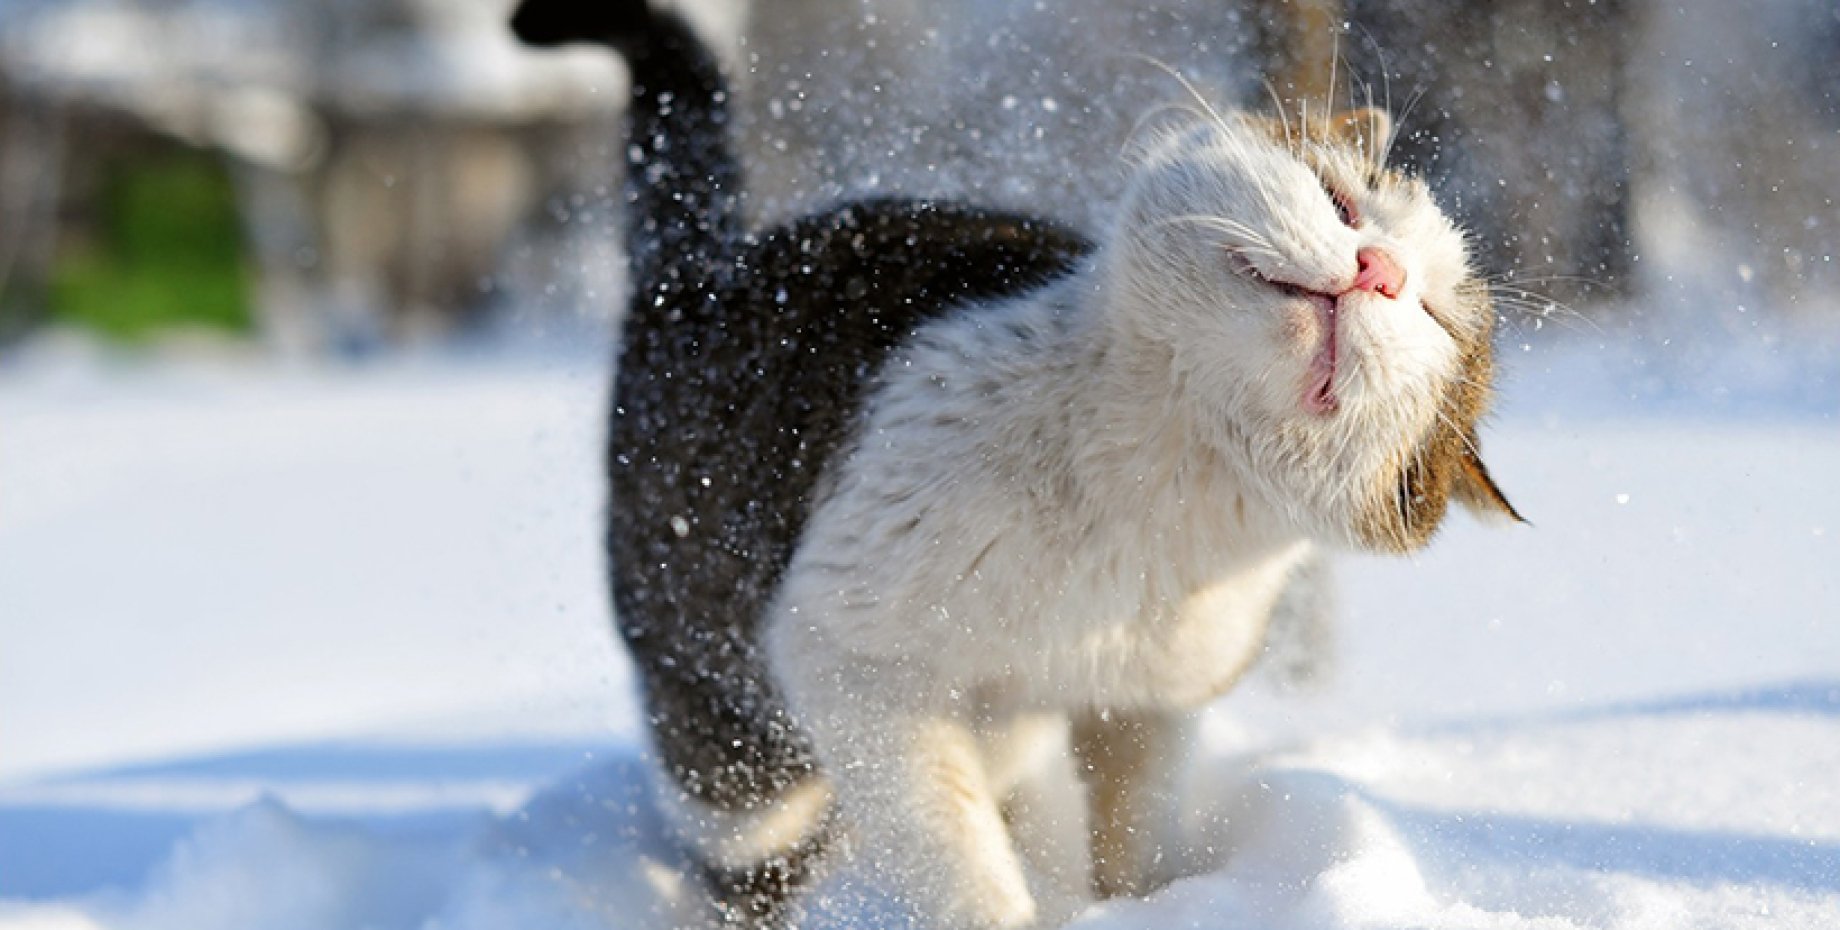 Снежок утром. Кот в снегу. Снежное утро. Зимнее настроение. Кот снежок.